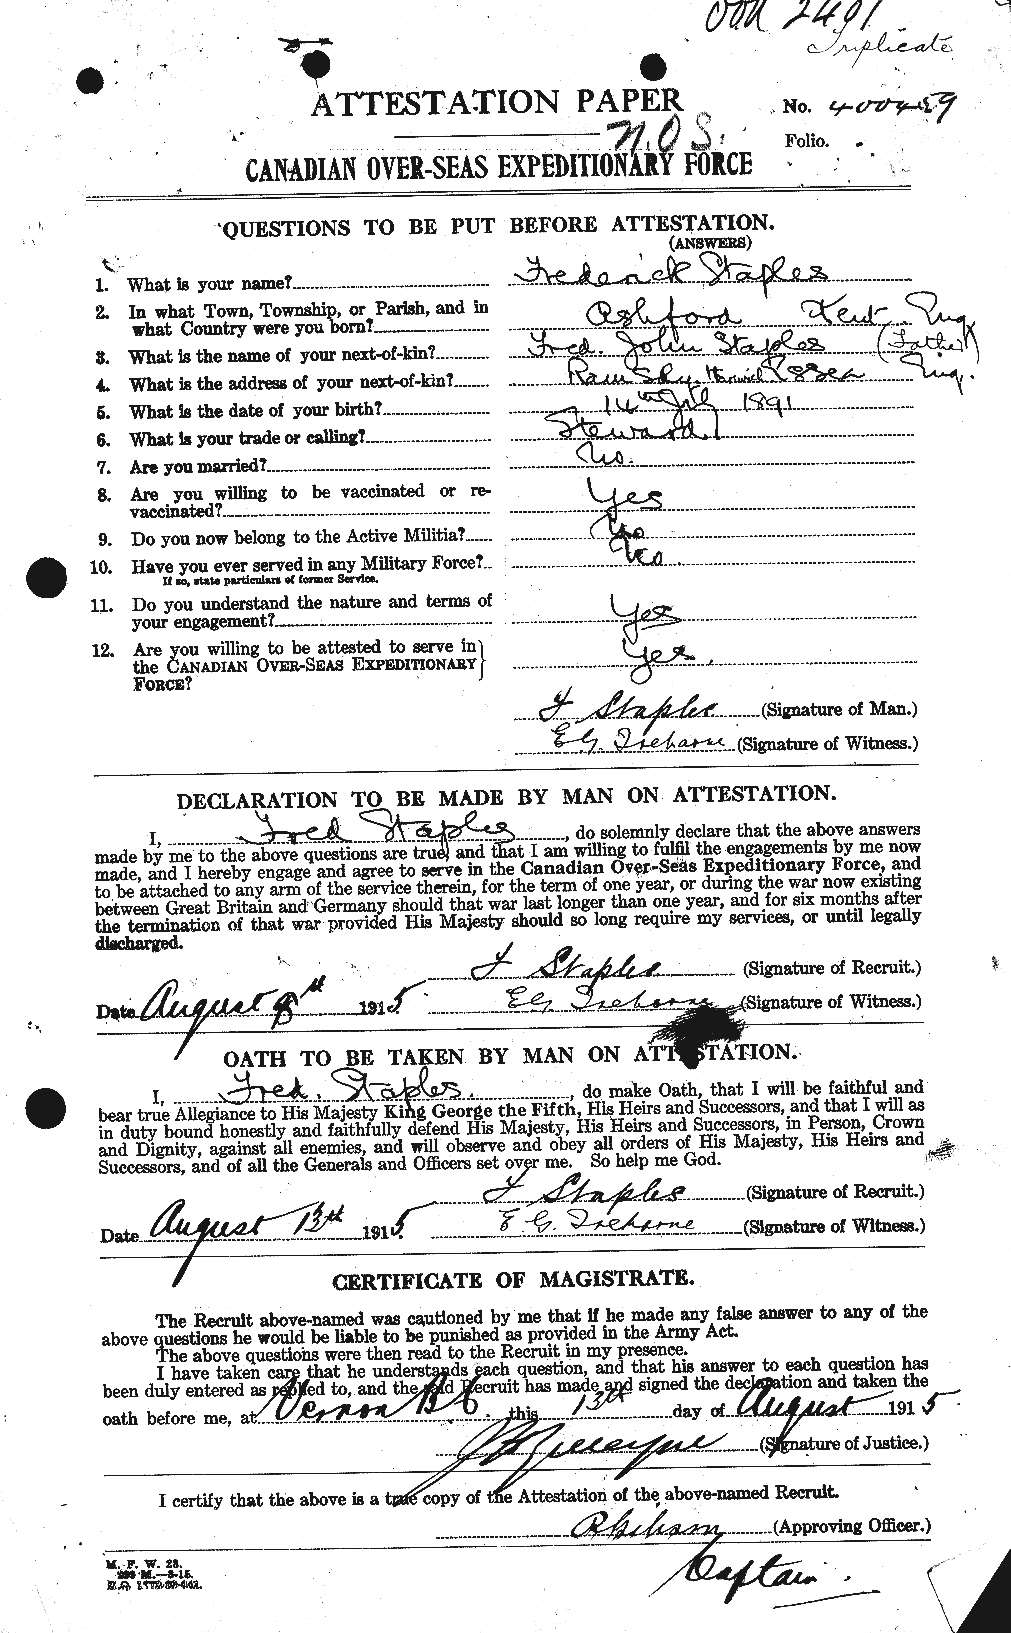 Dossiers du Personnel de la Première Guerre mondiale - CEC 114183a